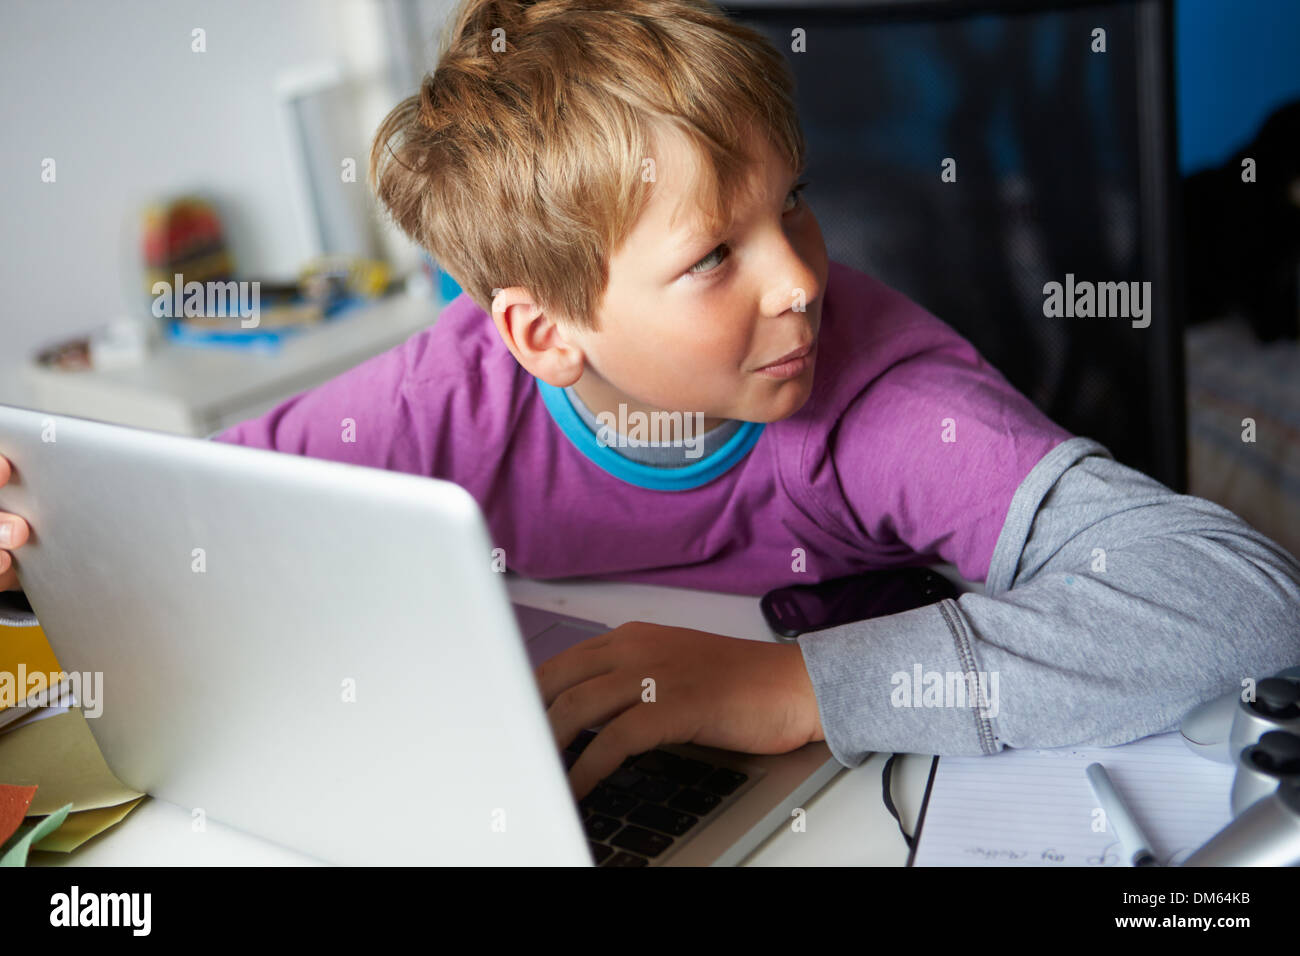 Junge verdächtig verhält, während mit Laptop Stockfoto